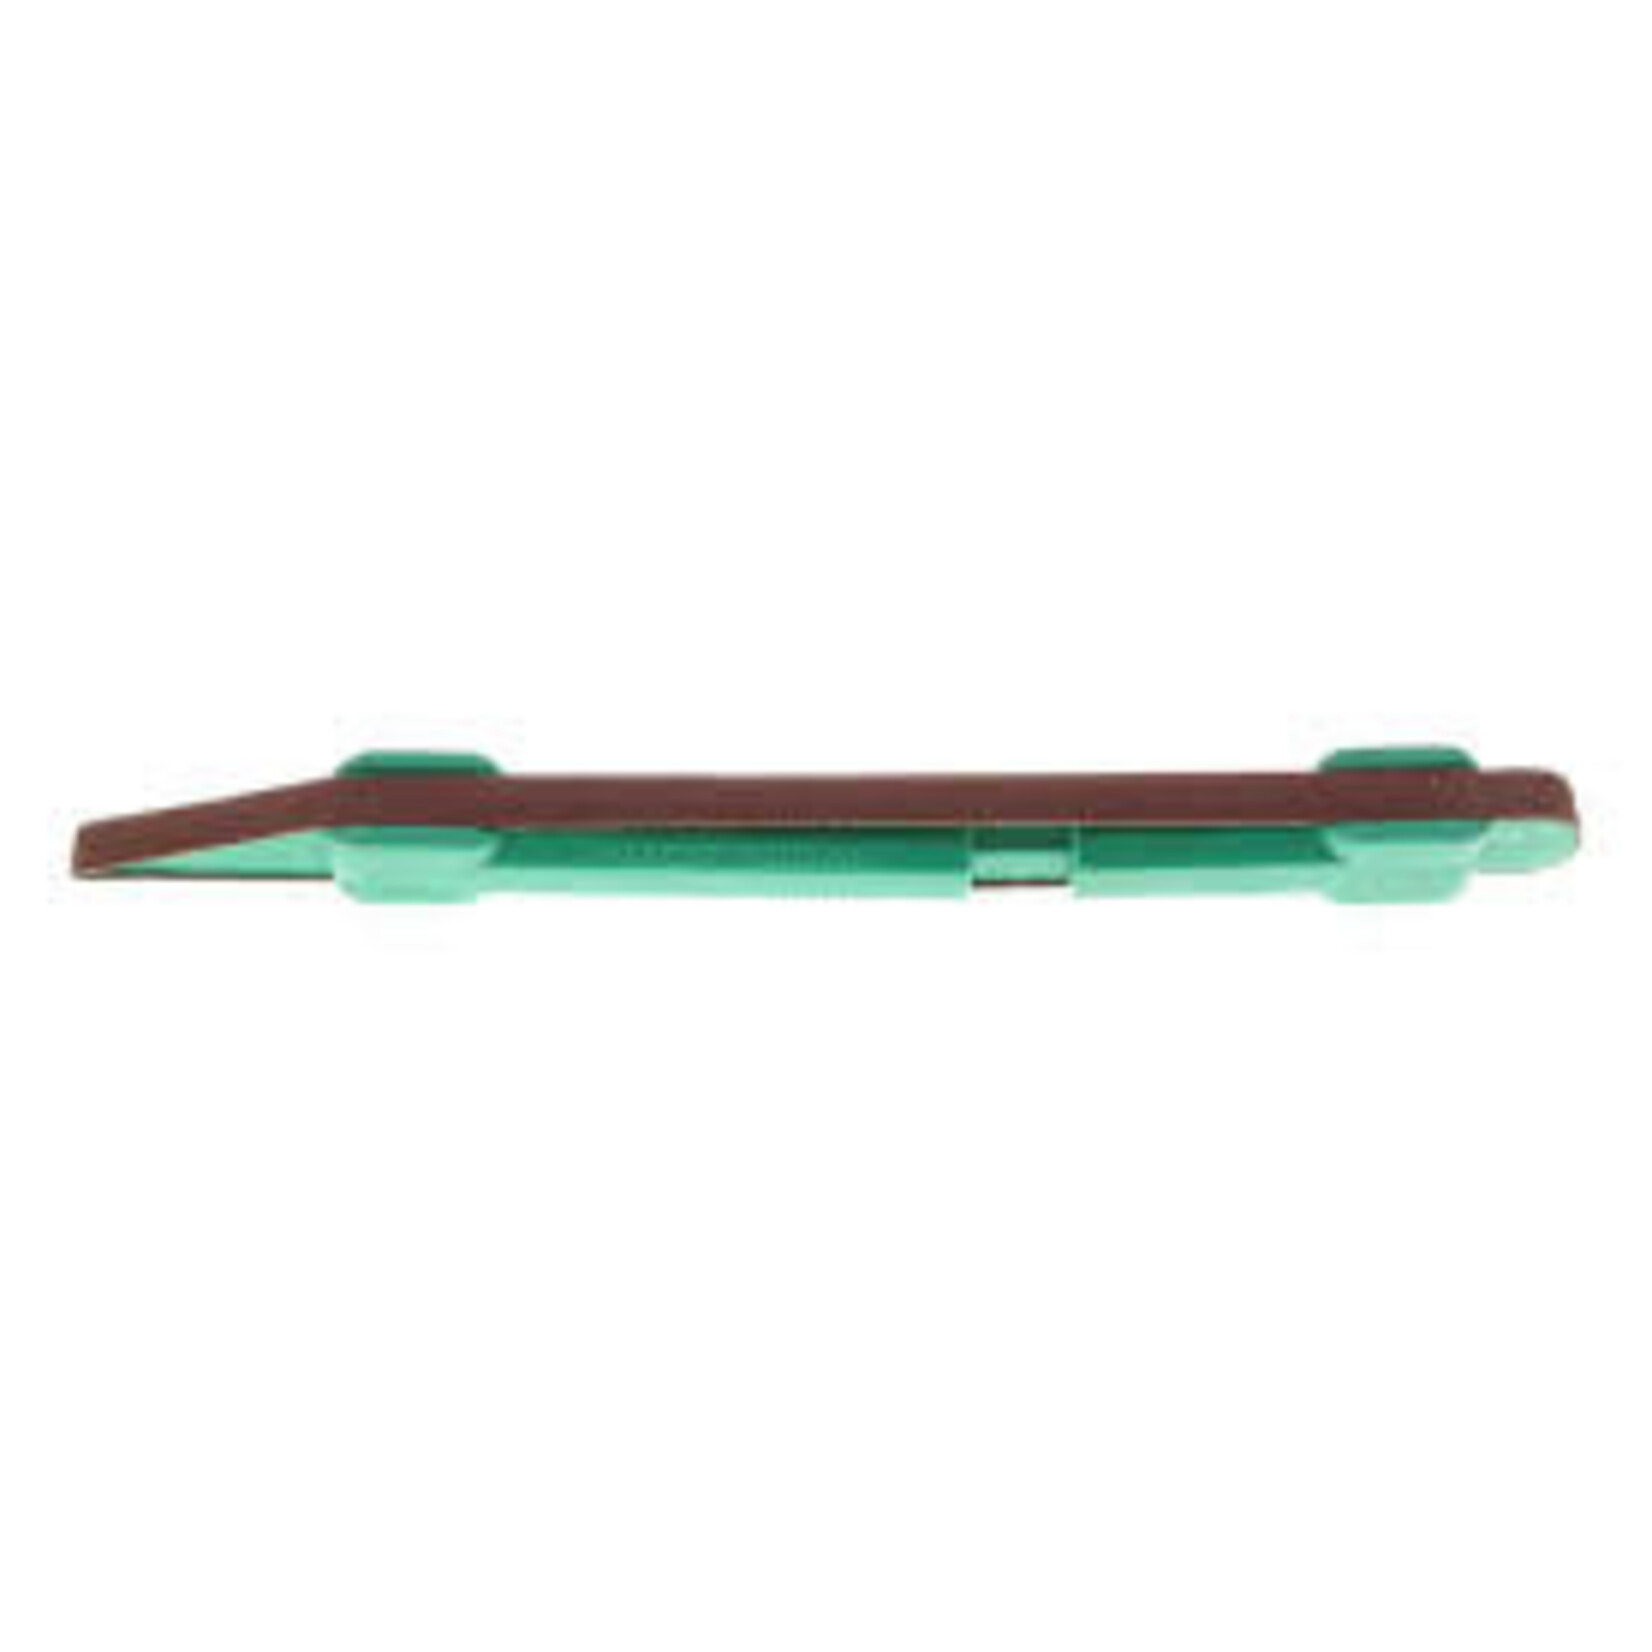 Excel Sanding Stick with 320 Grit belt